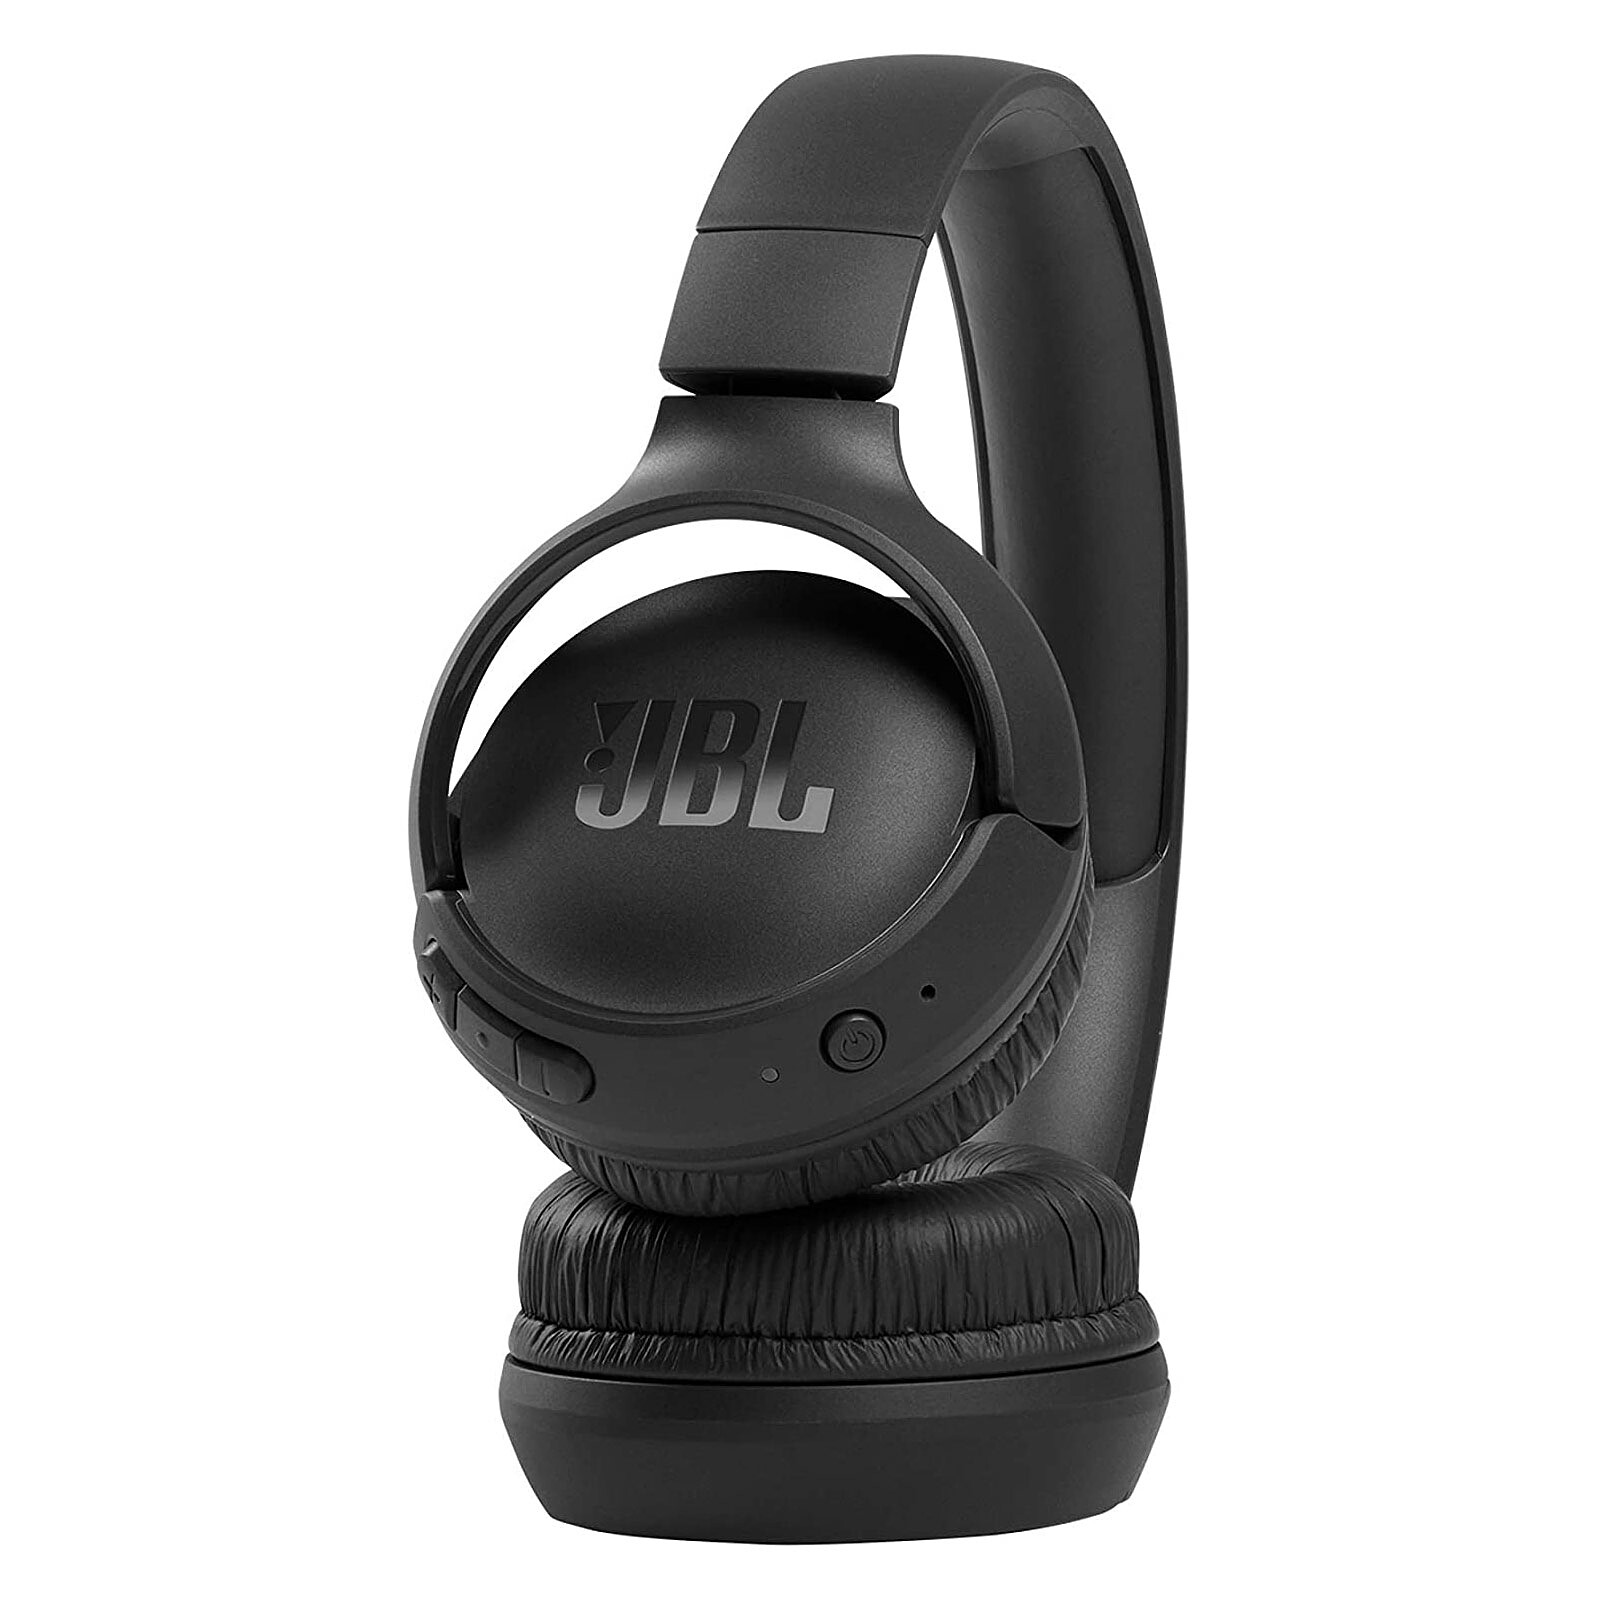 Casque d'écoute Bluetooth Tune 510BT de JBL - Noir